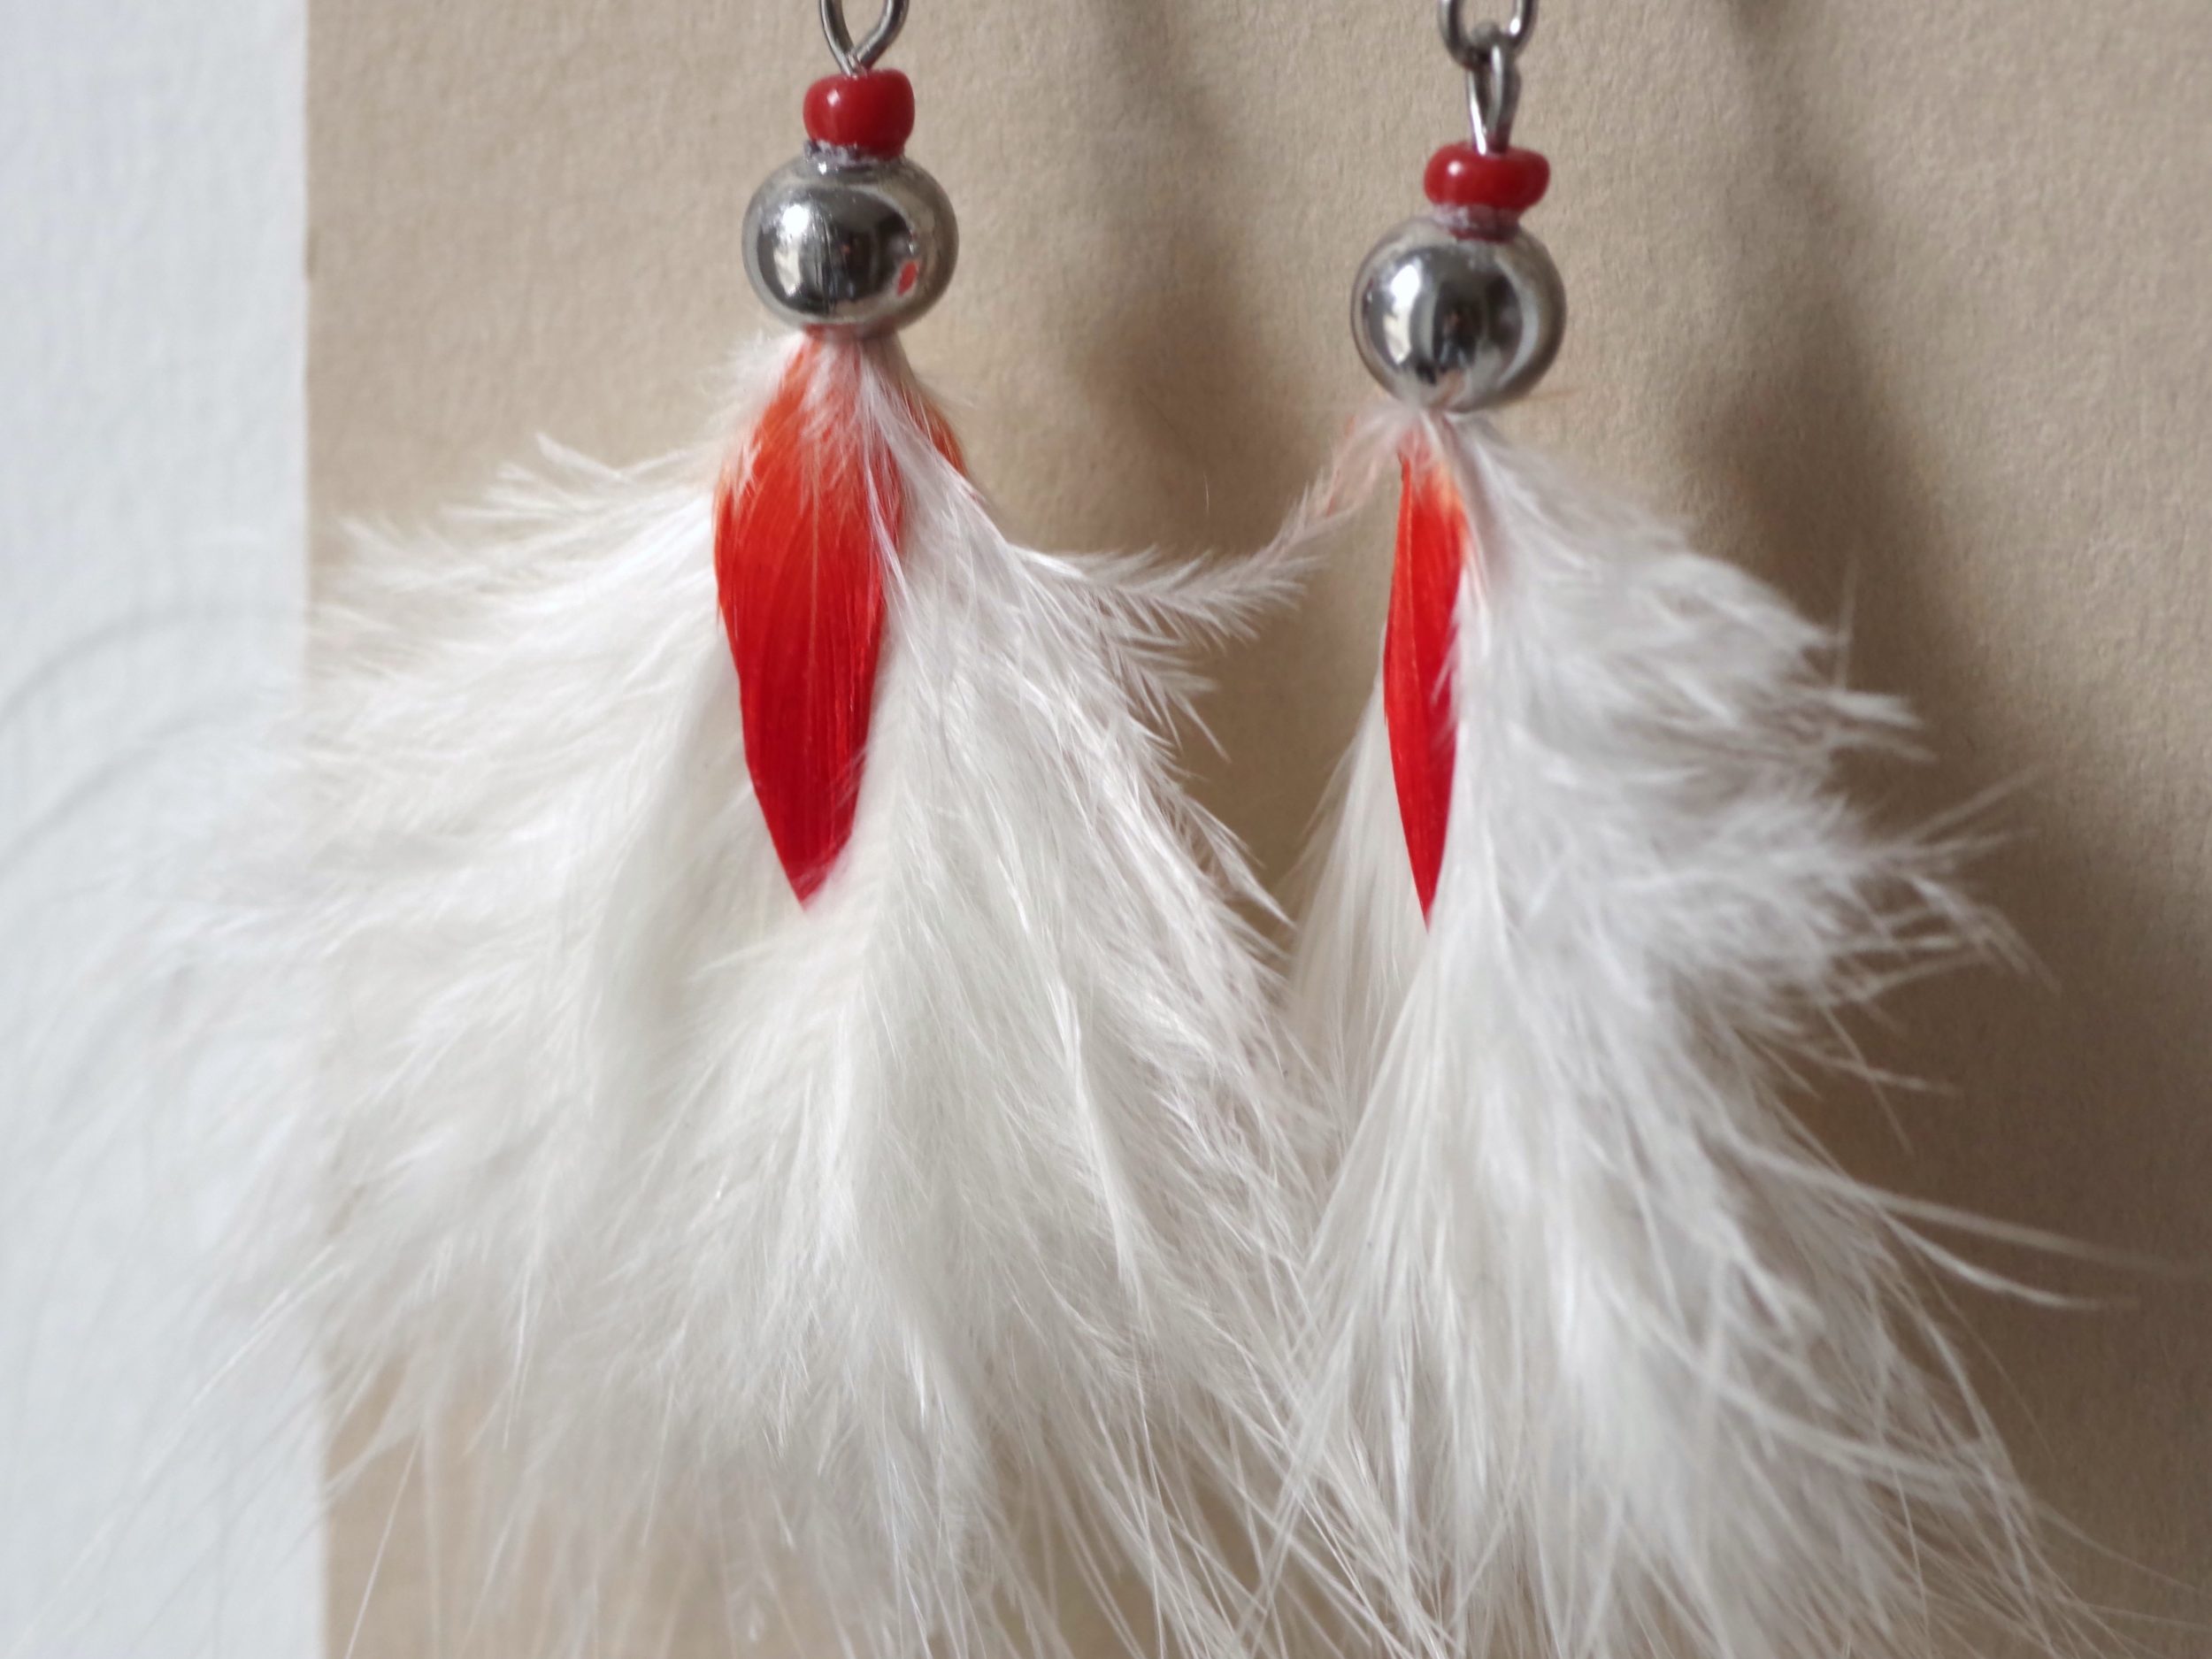 boucles d'oreilles rouge et blanc, plumes duveteuses très vaporeuses blanches disposées en pompon, avec une petite plume rouge au milieu